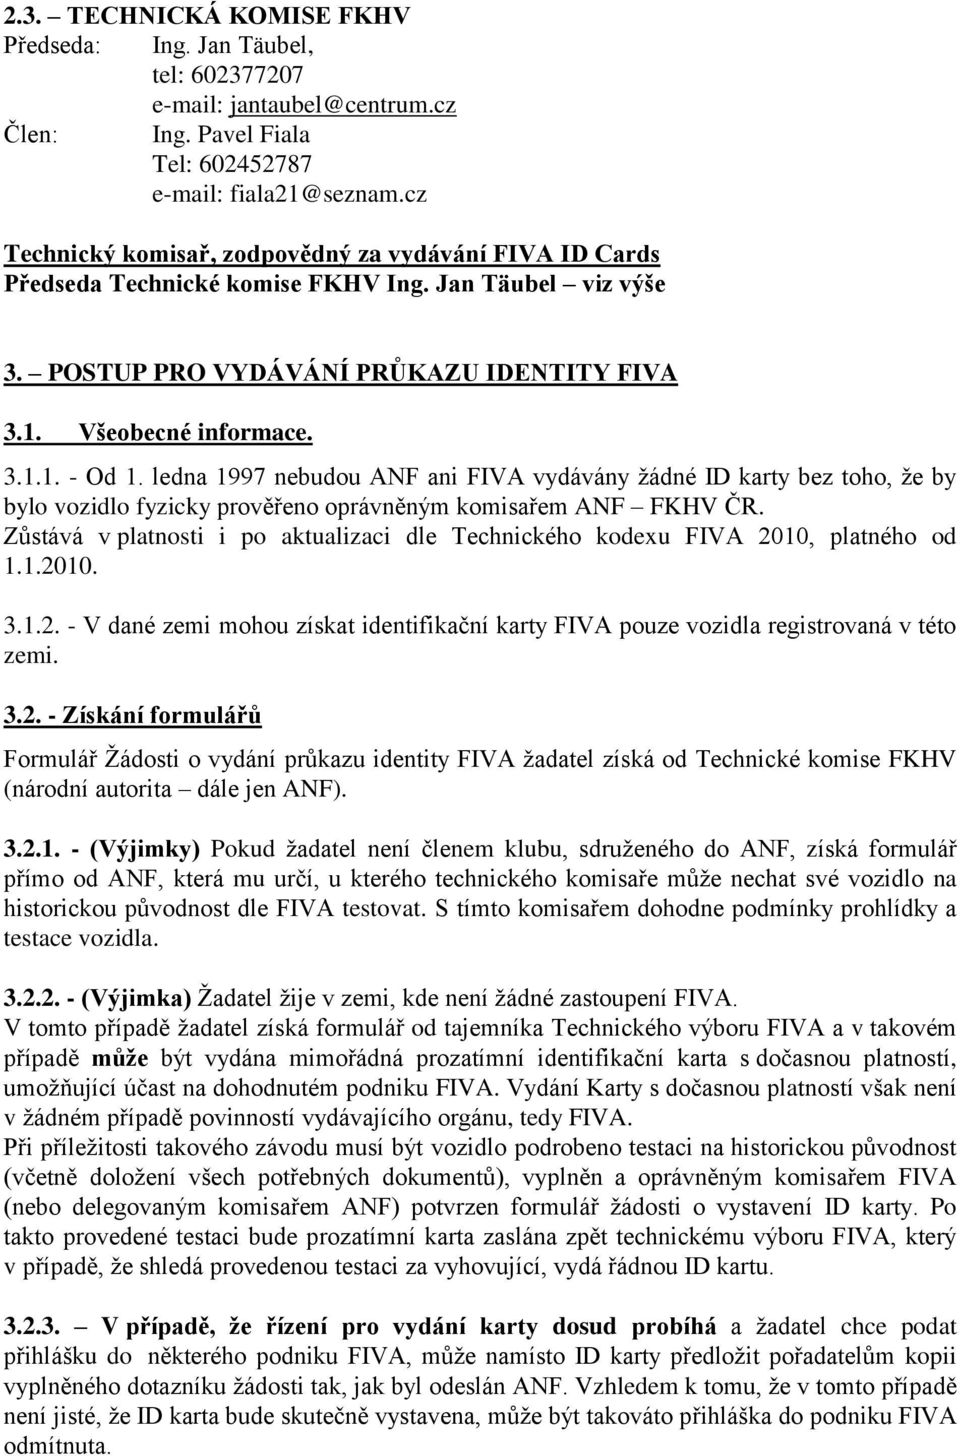 ledna 1997 nebudou ANF ani FIVA vydávány žádné ID karty bez toho, že by bylo vozidlo fyzicky prověřeno oprávněným komisařem ANF FKHV ČR.